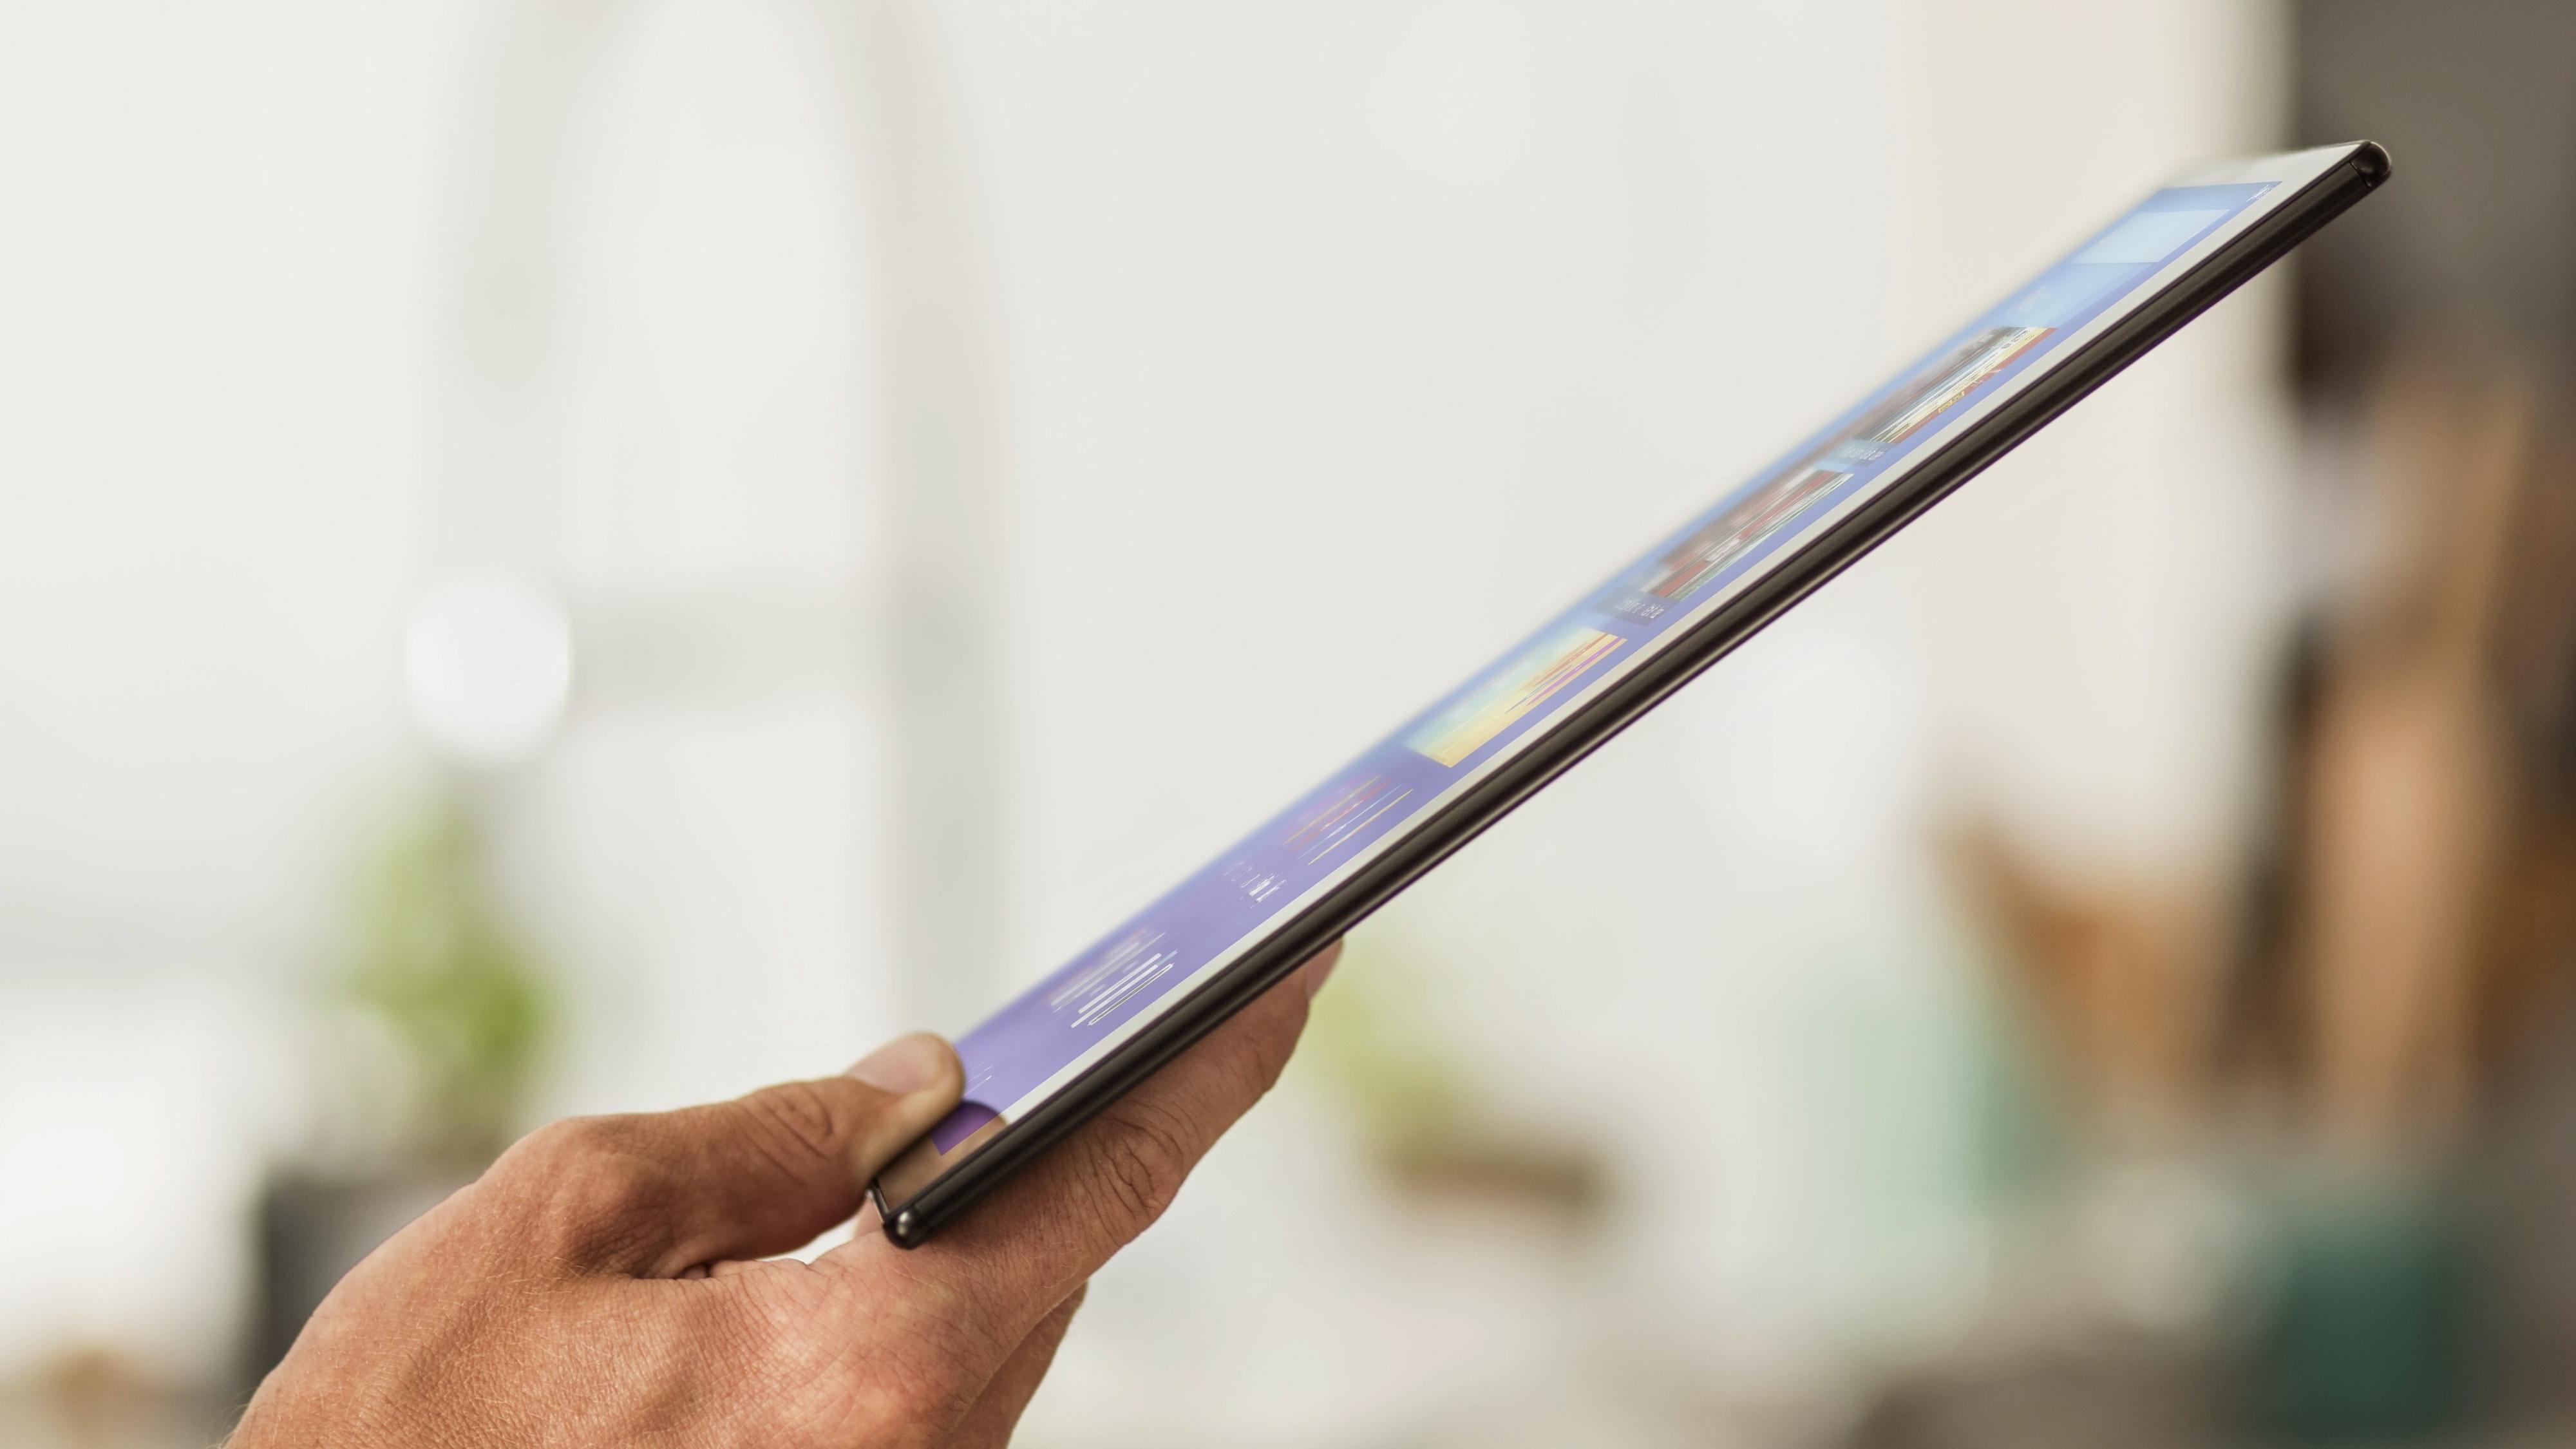 Sony Xperia Z4 Tablet er det letteste nettbrettet i klassen